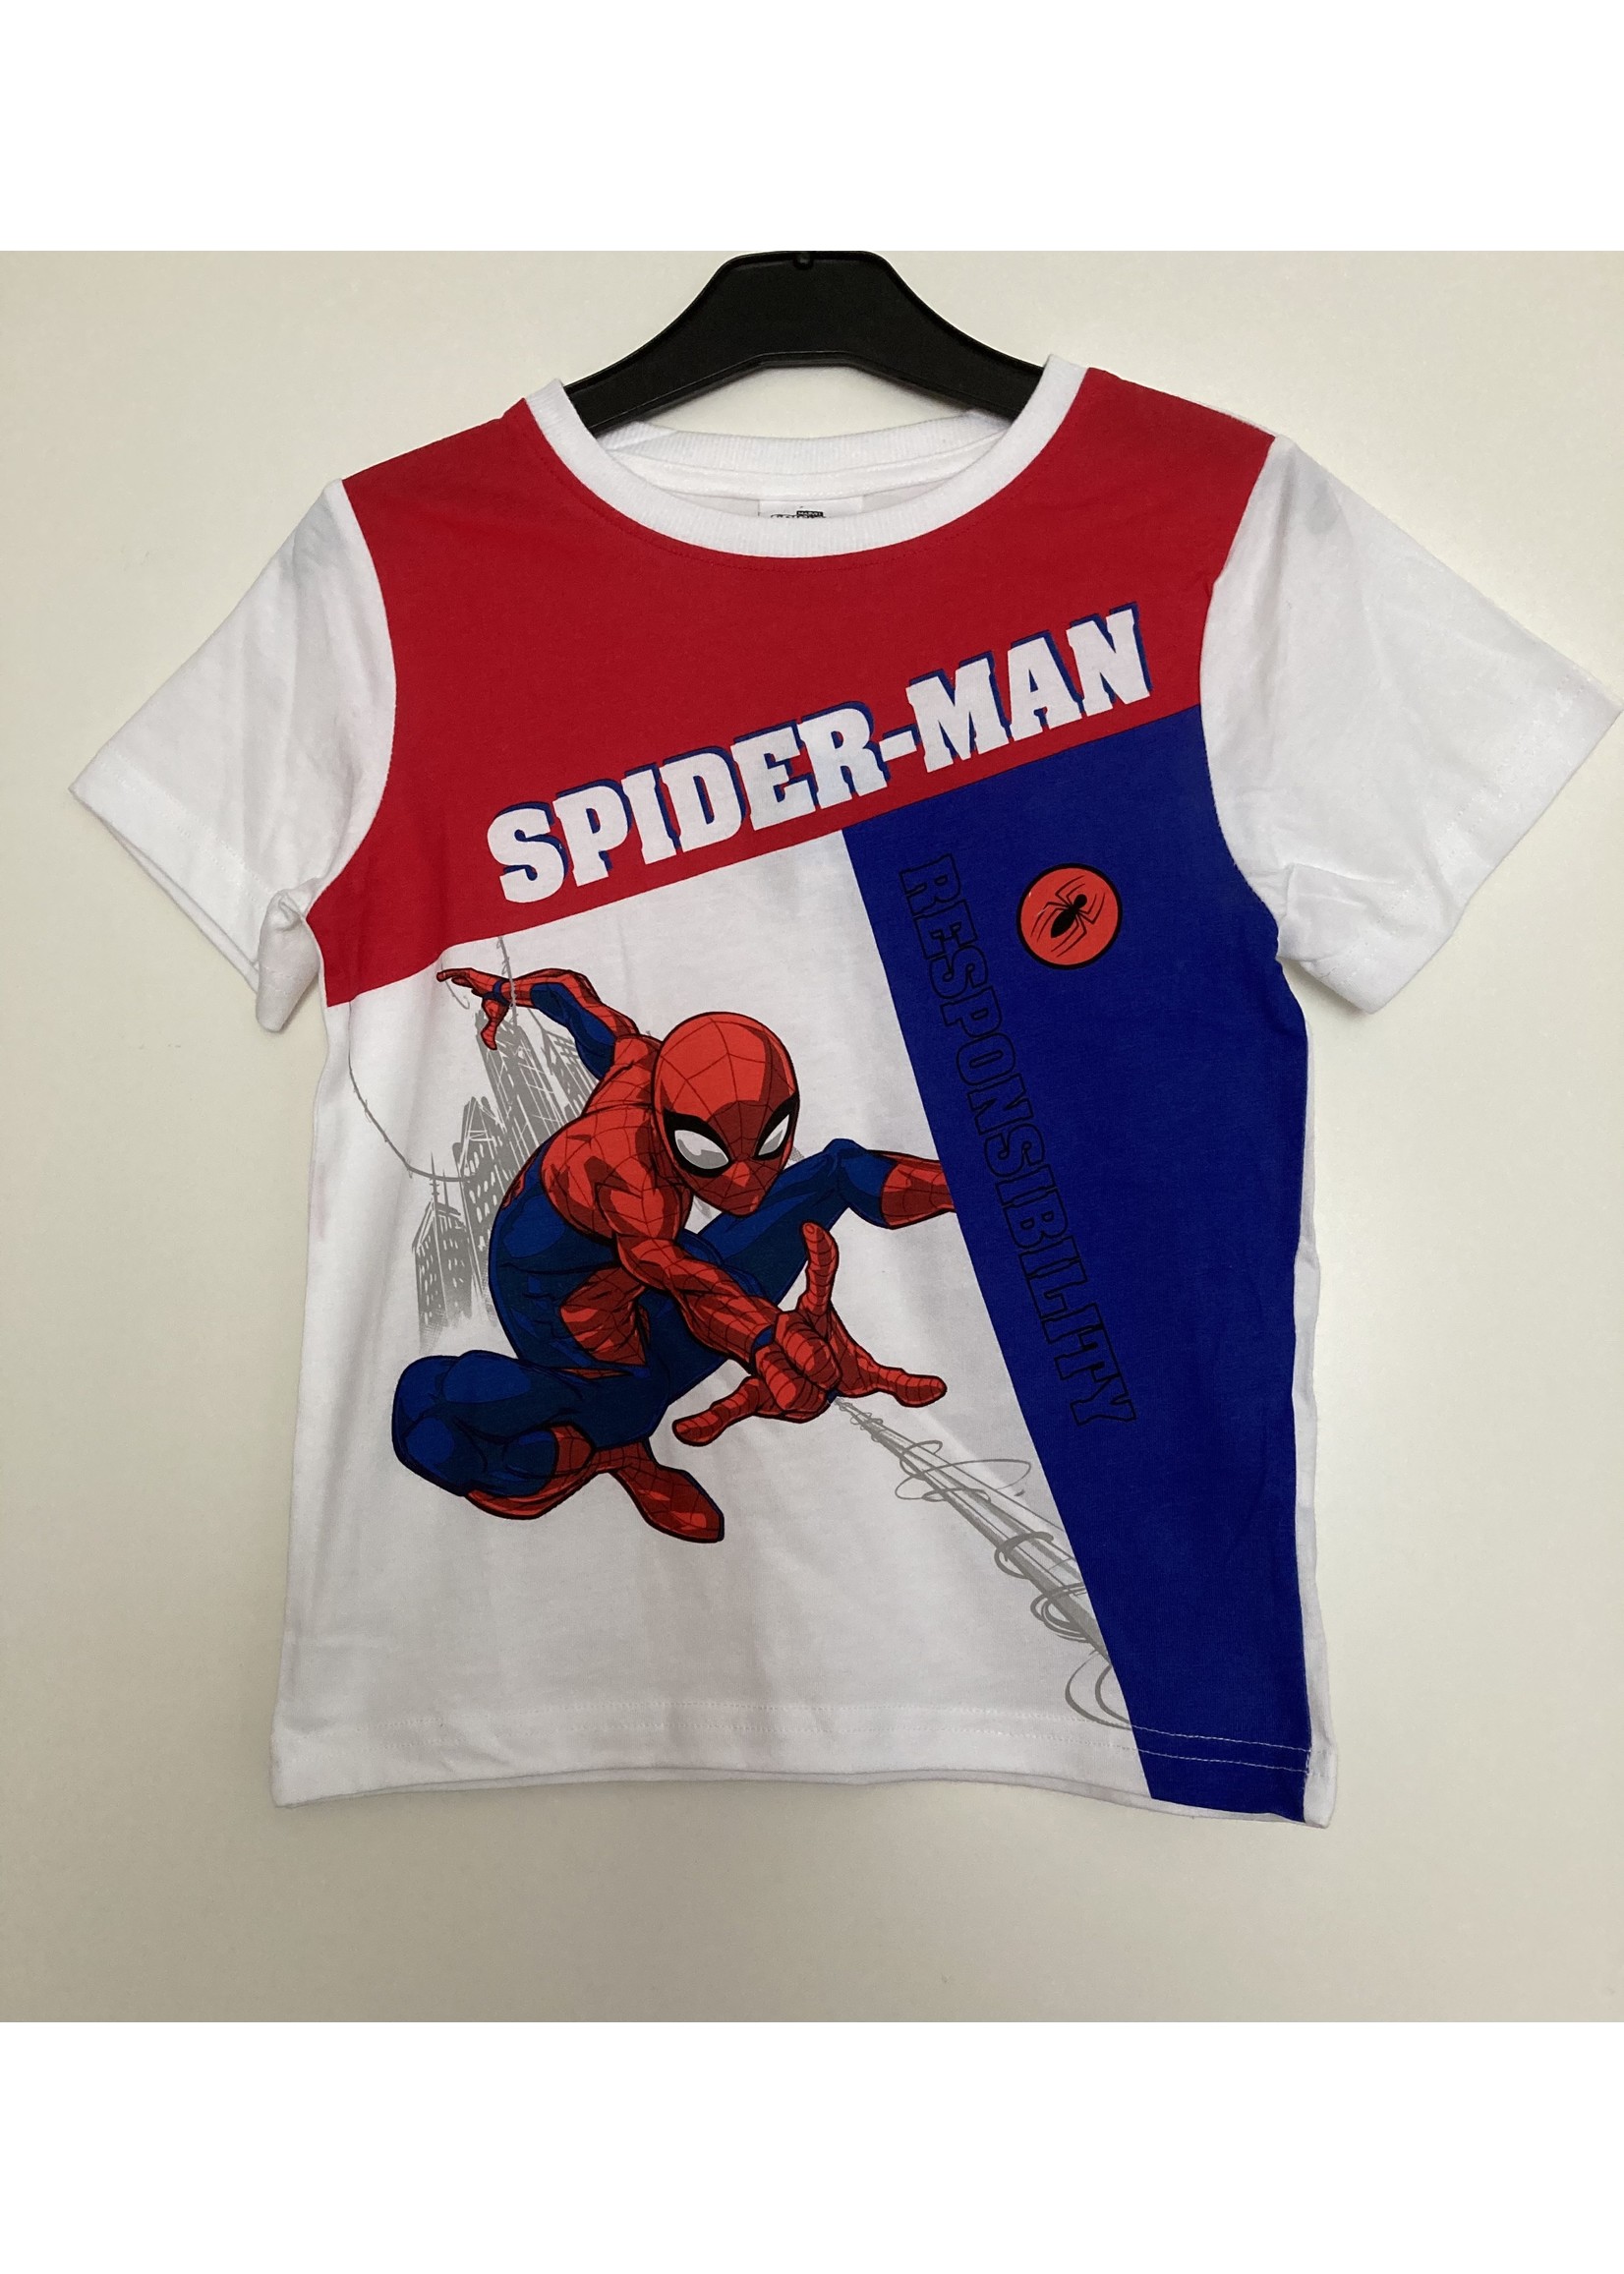 Marvel Spiderman T-shirt from Marvel white